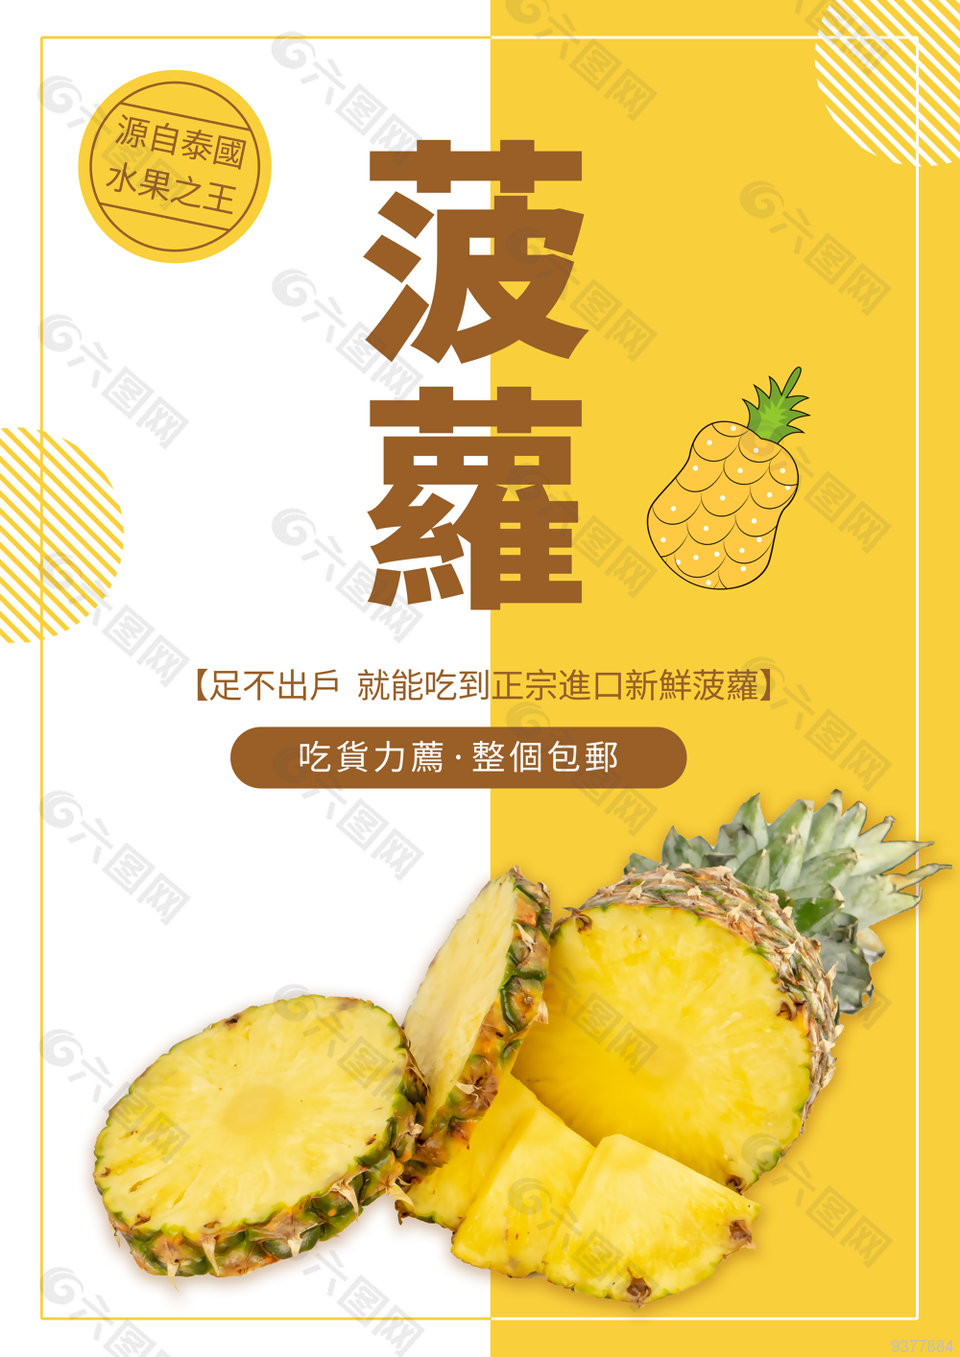 菠萝水果海报宣传模板